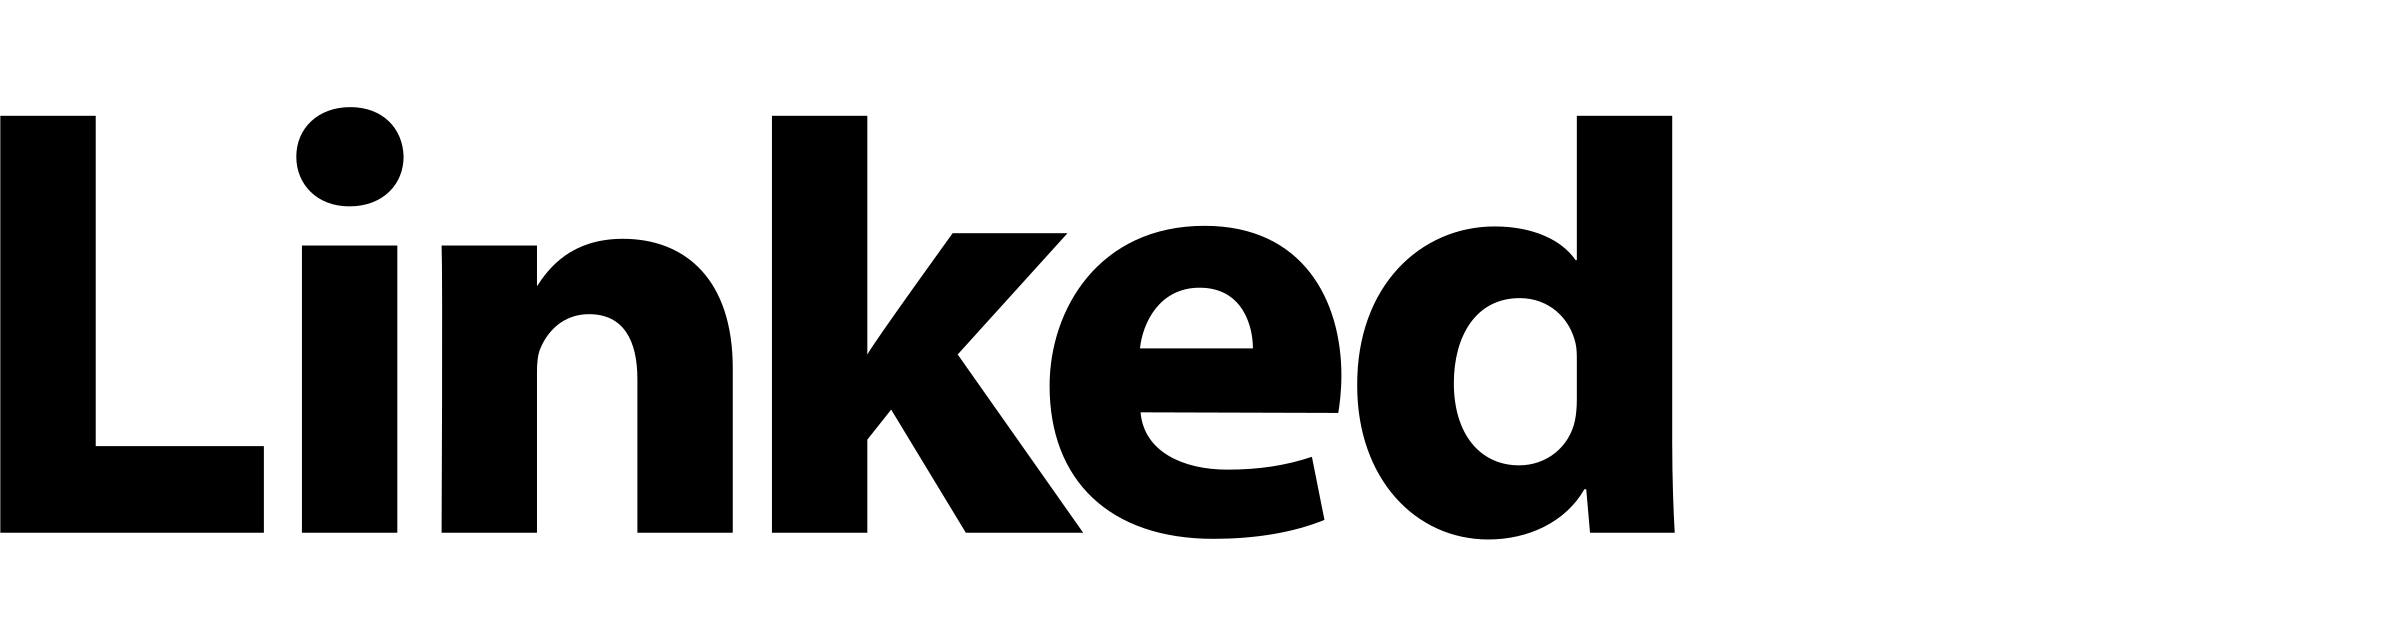 Linkedin Logo Png Black - Linkedin Clipart (2400x636), Png Download